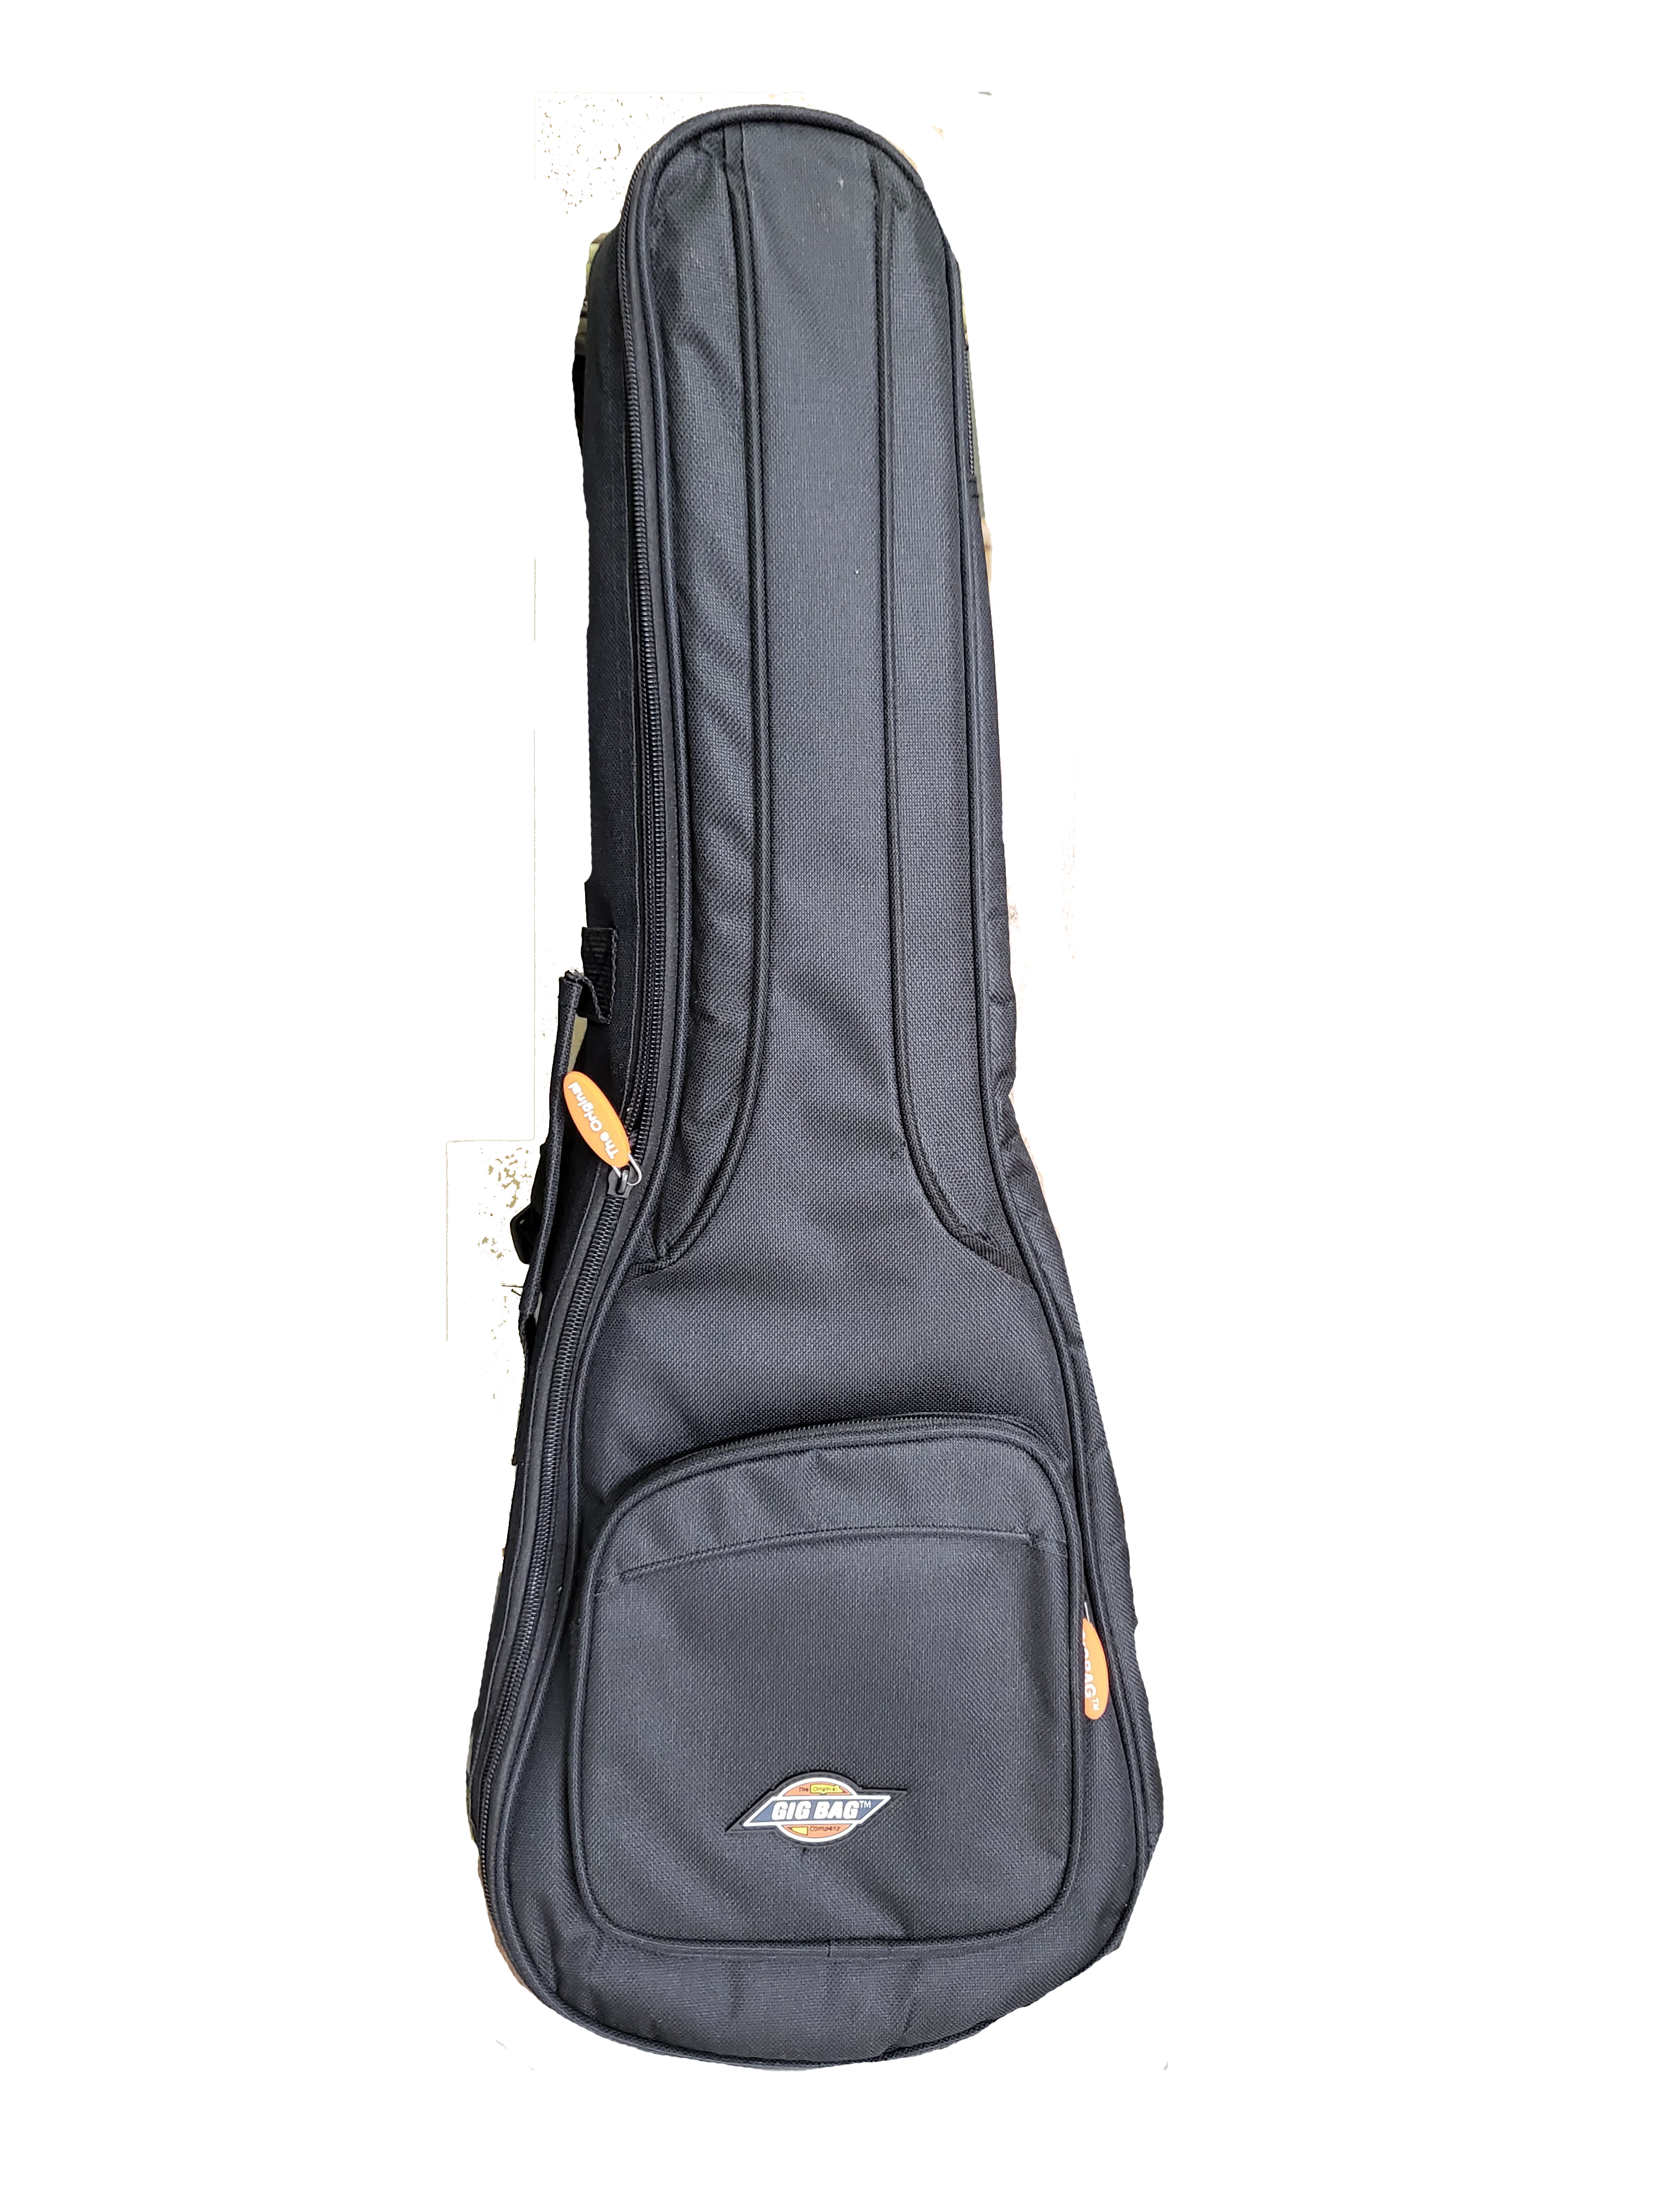 Original Gig Bag Co. Tenor Ukulele Gig Bag Soft Case with 10mm Padding & Shoulder Straps